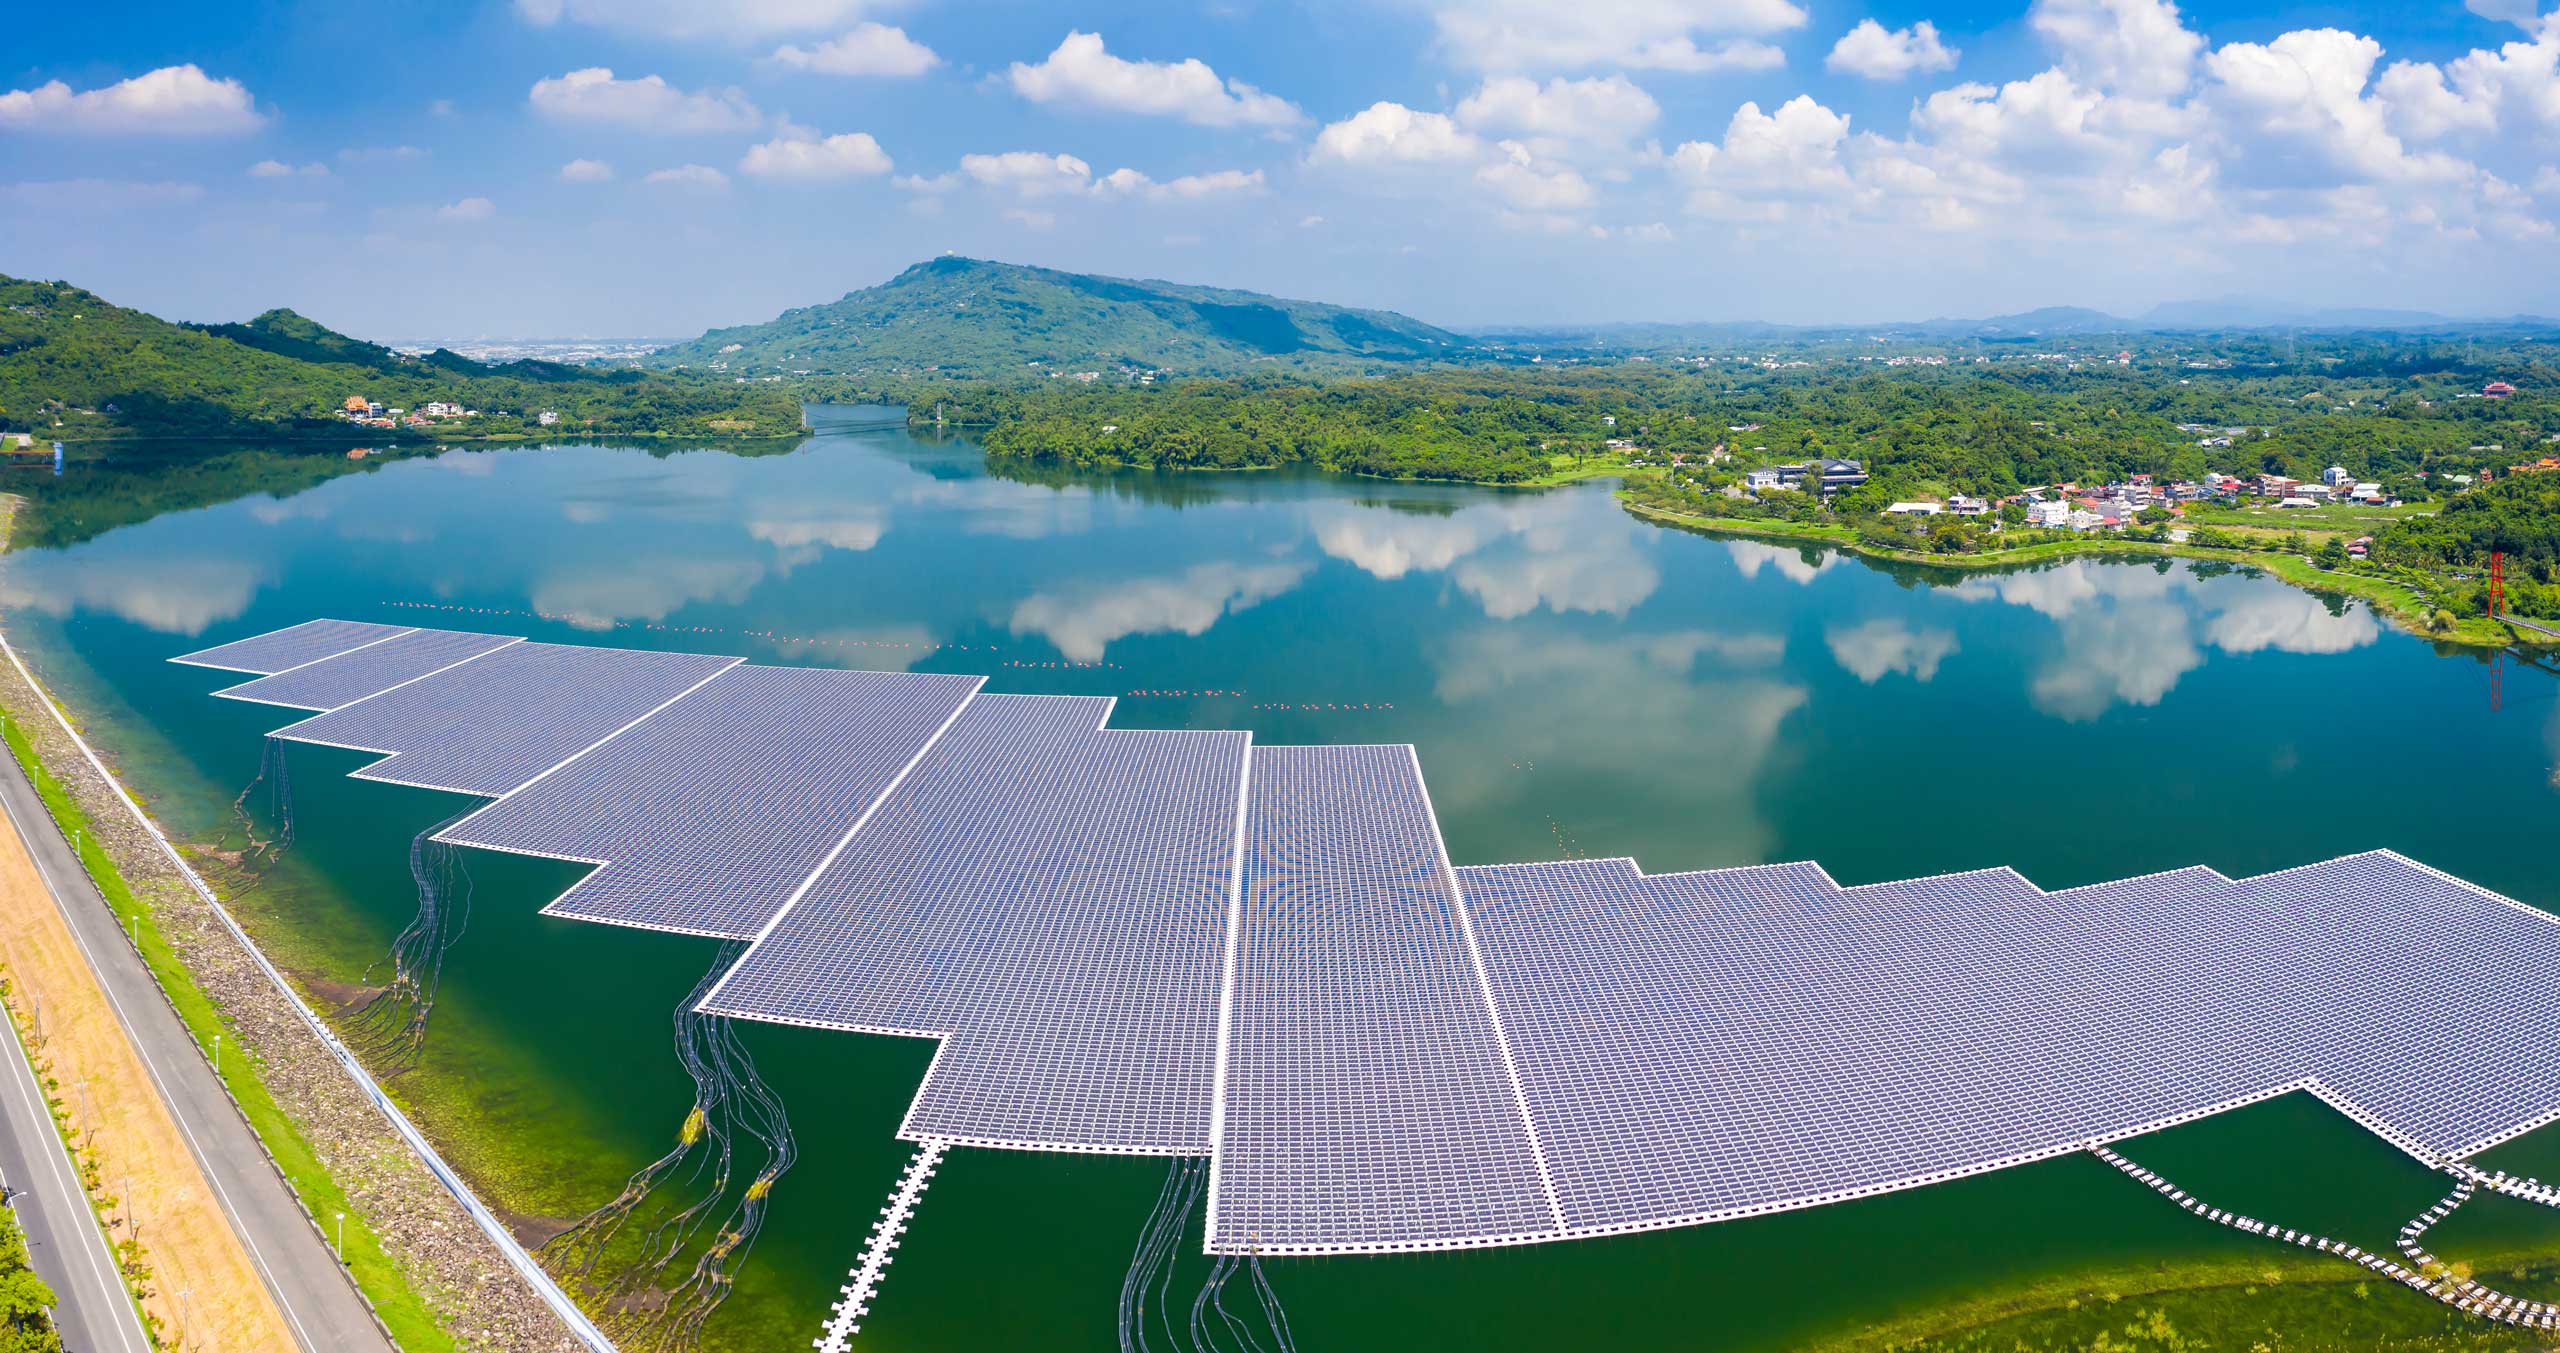 Floating solar PV farm